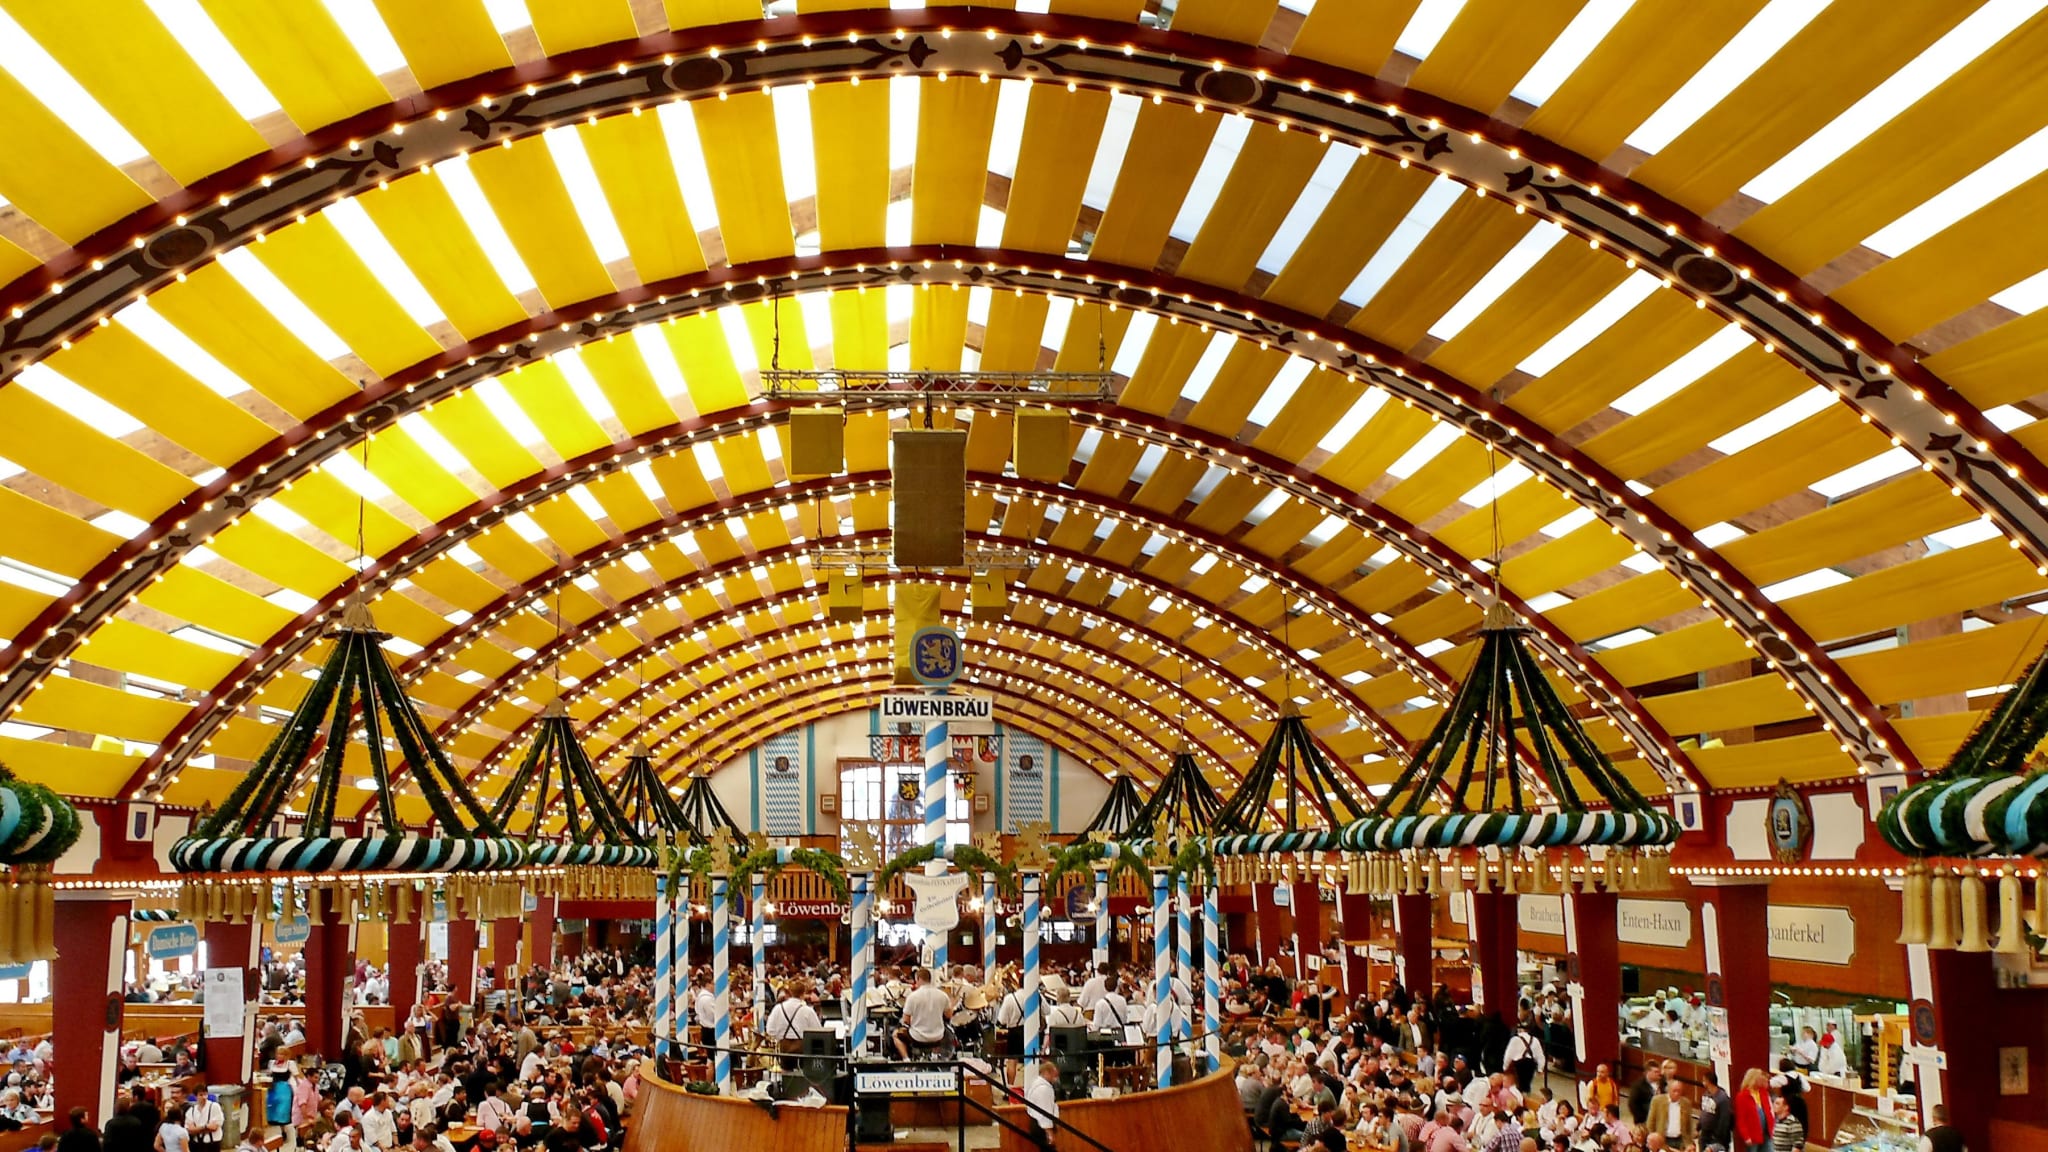 Das Löwenbräu-Festzelt © München Tourismus, Werner Boehm